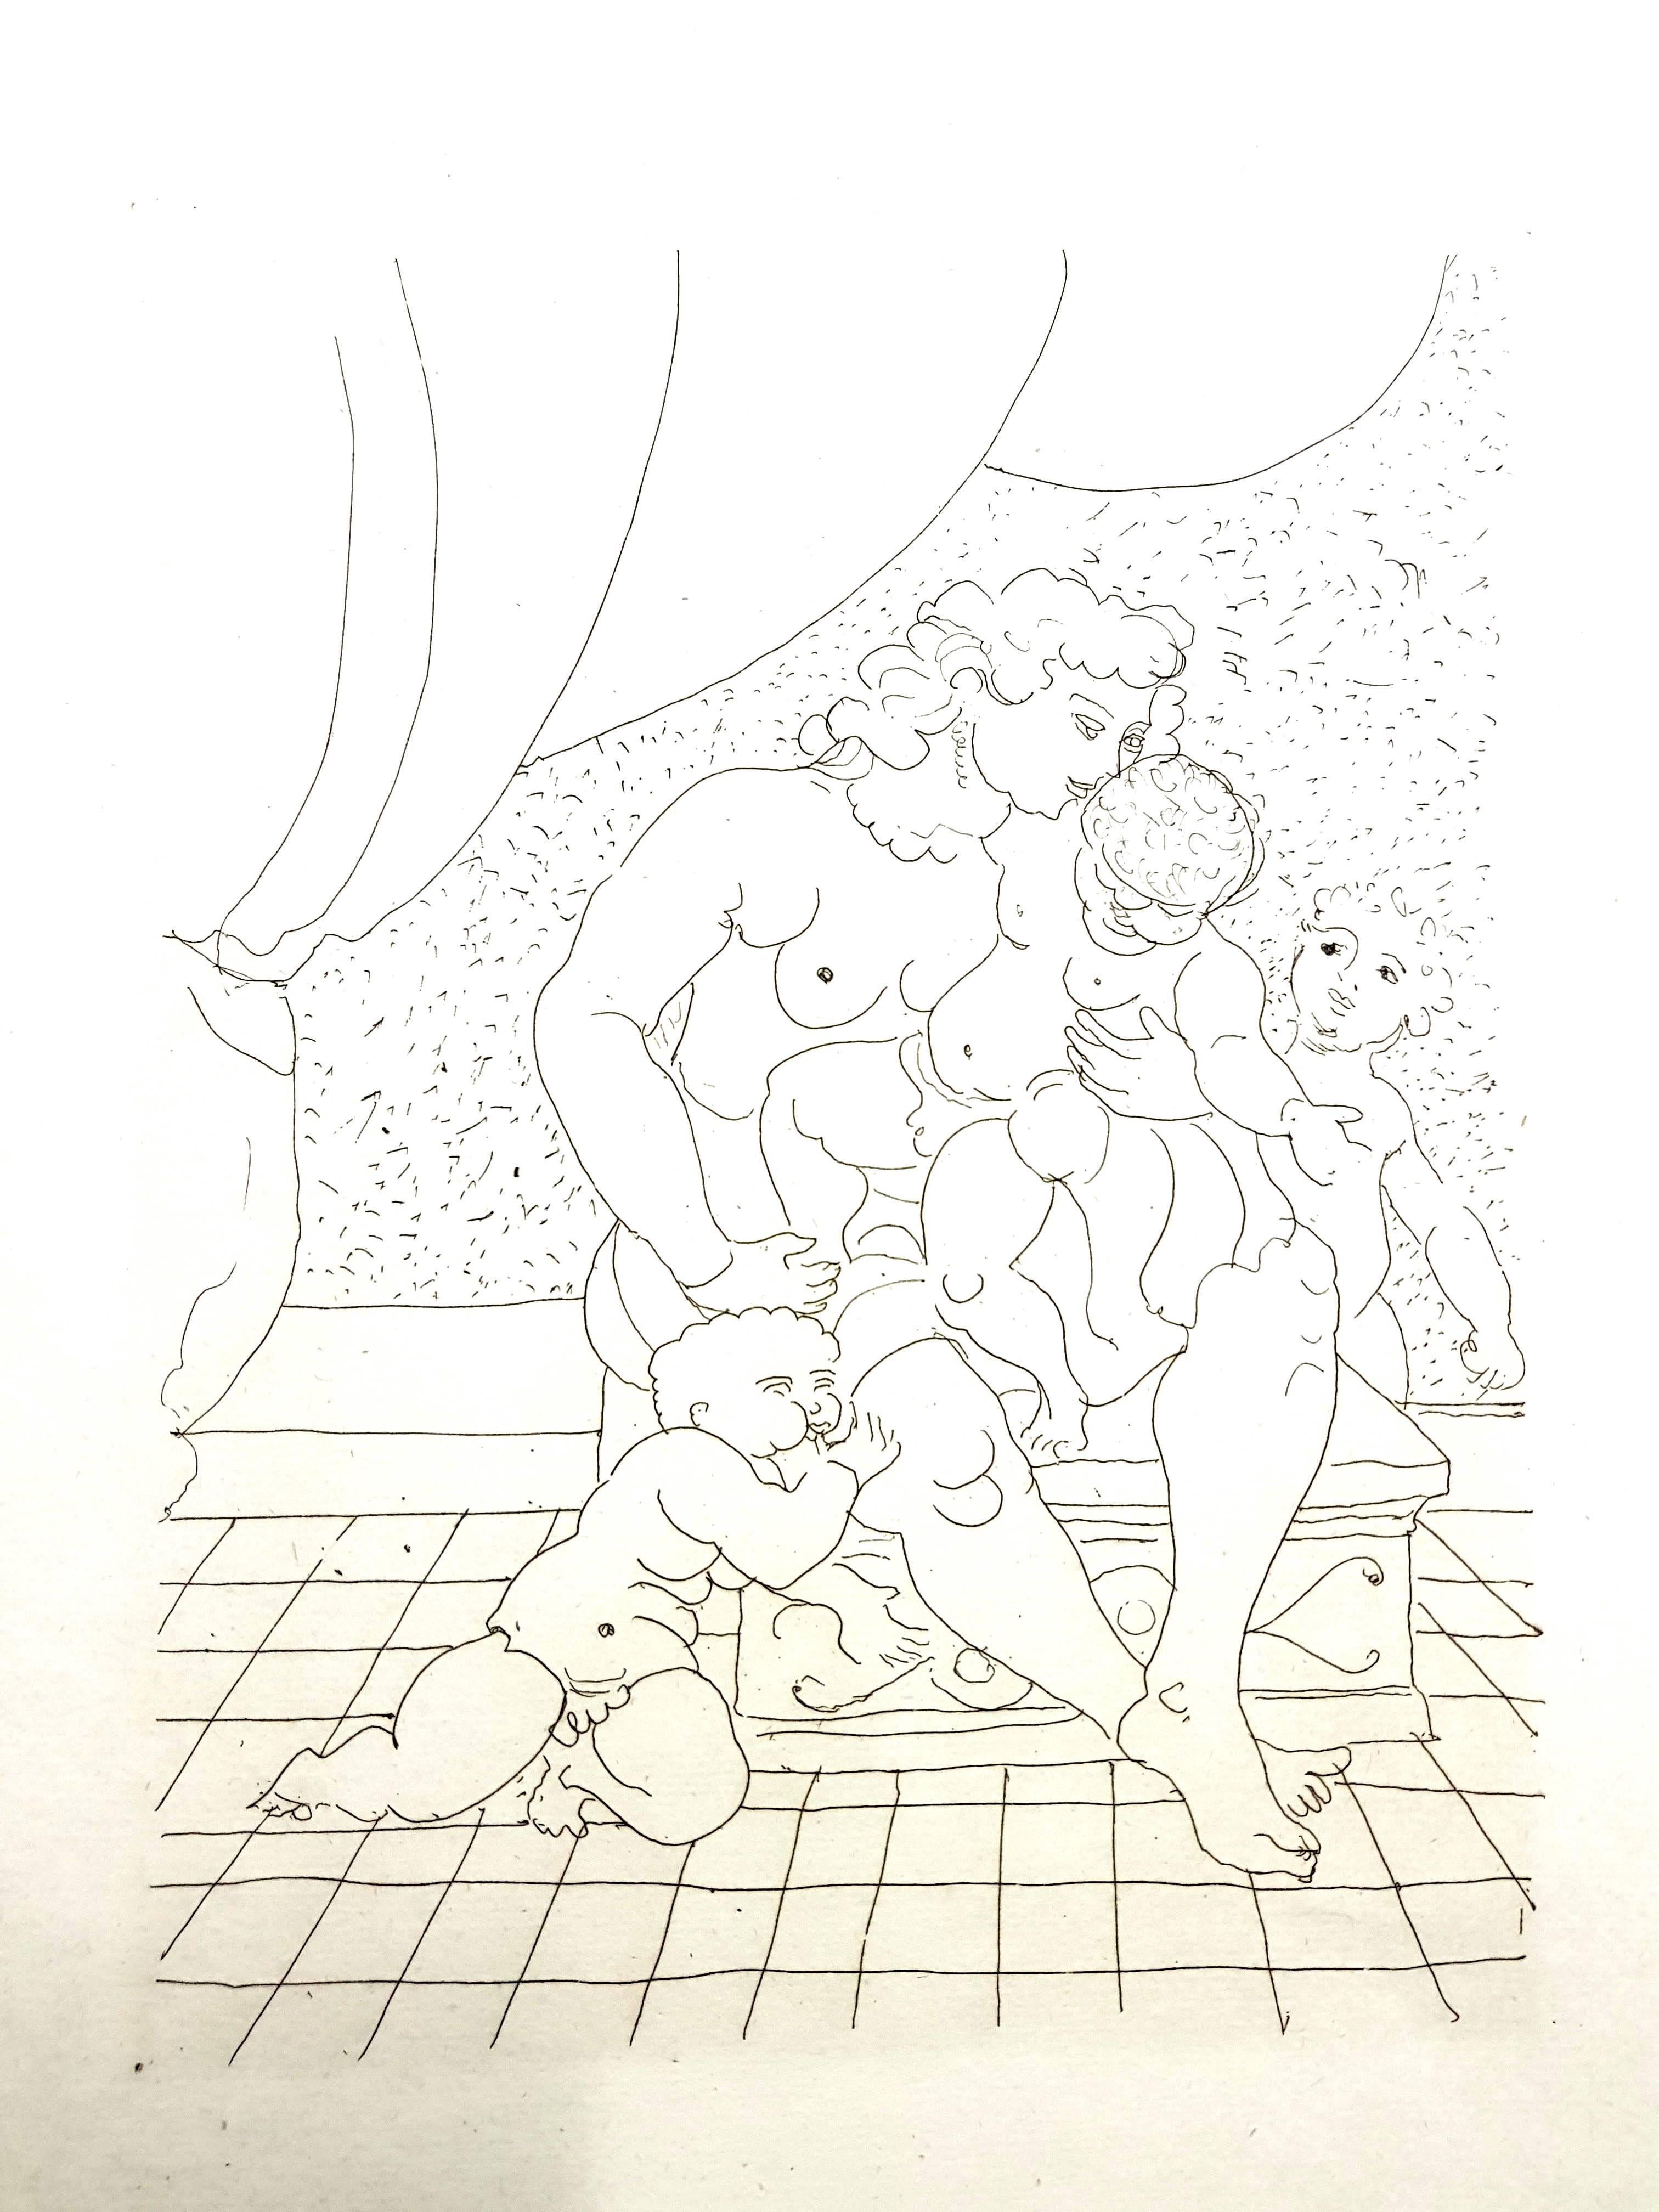 André Derain - Ovids Heroides 
Original-Radierung
Auflage von 134
Abmessungen: 32 x 25 cm
Ovide [Marcel Prevost], Héroïdes, Paris, Société des Cent-une, 1938
Unsigniert und nicht nummeriert wie ausgegeben